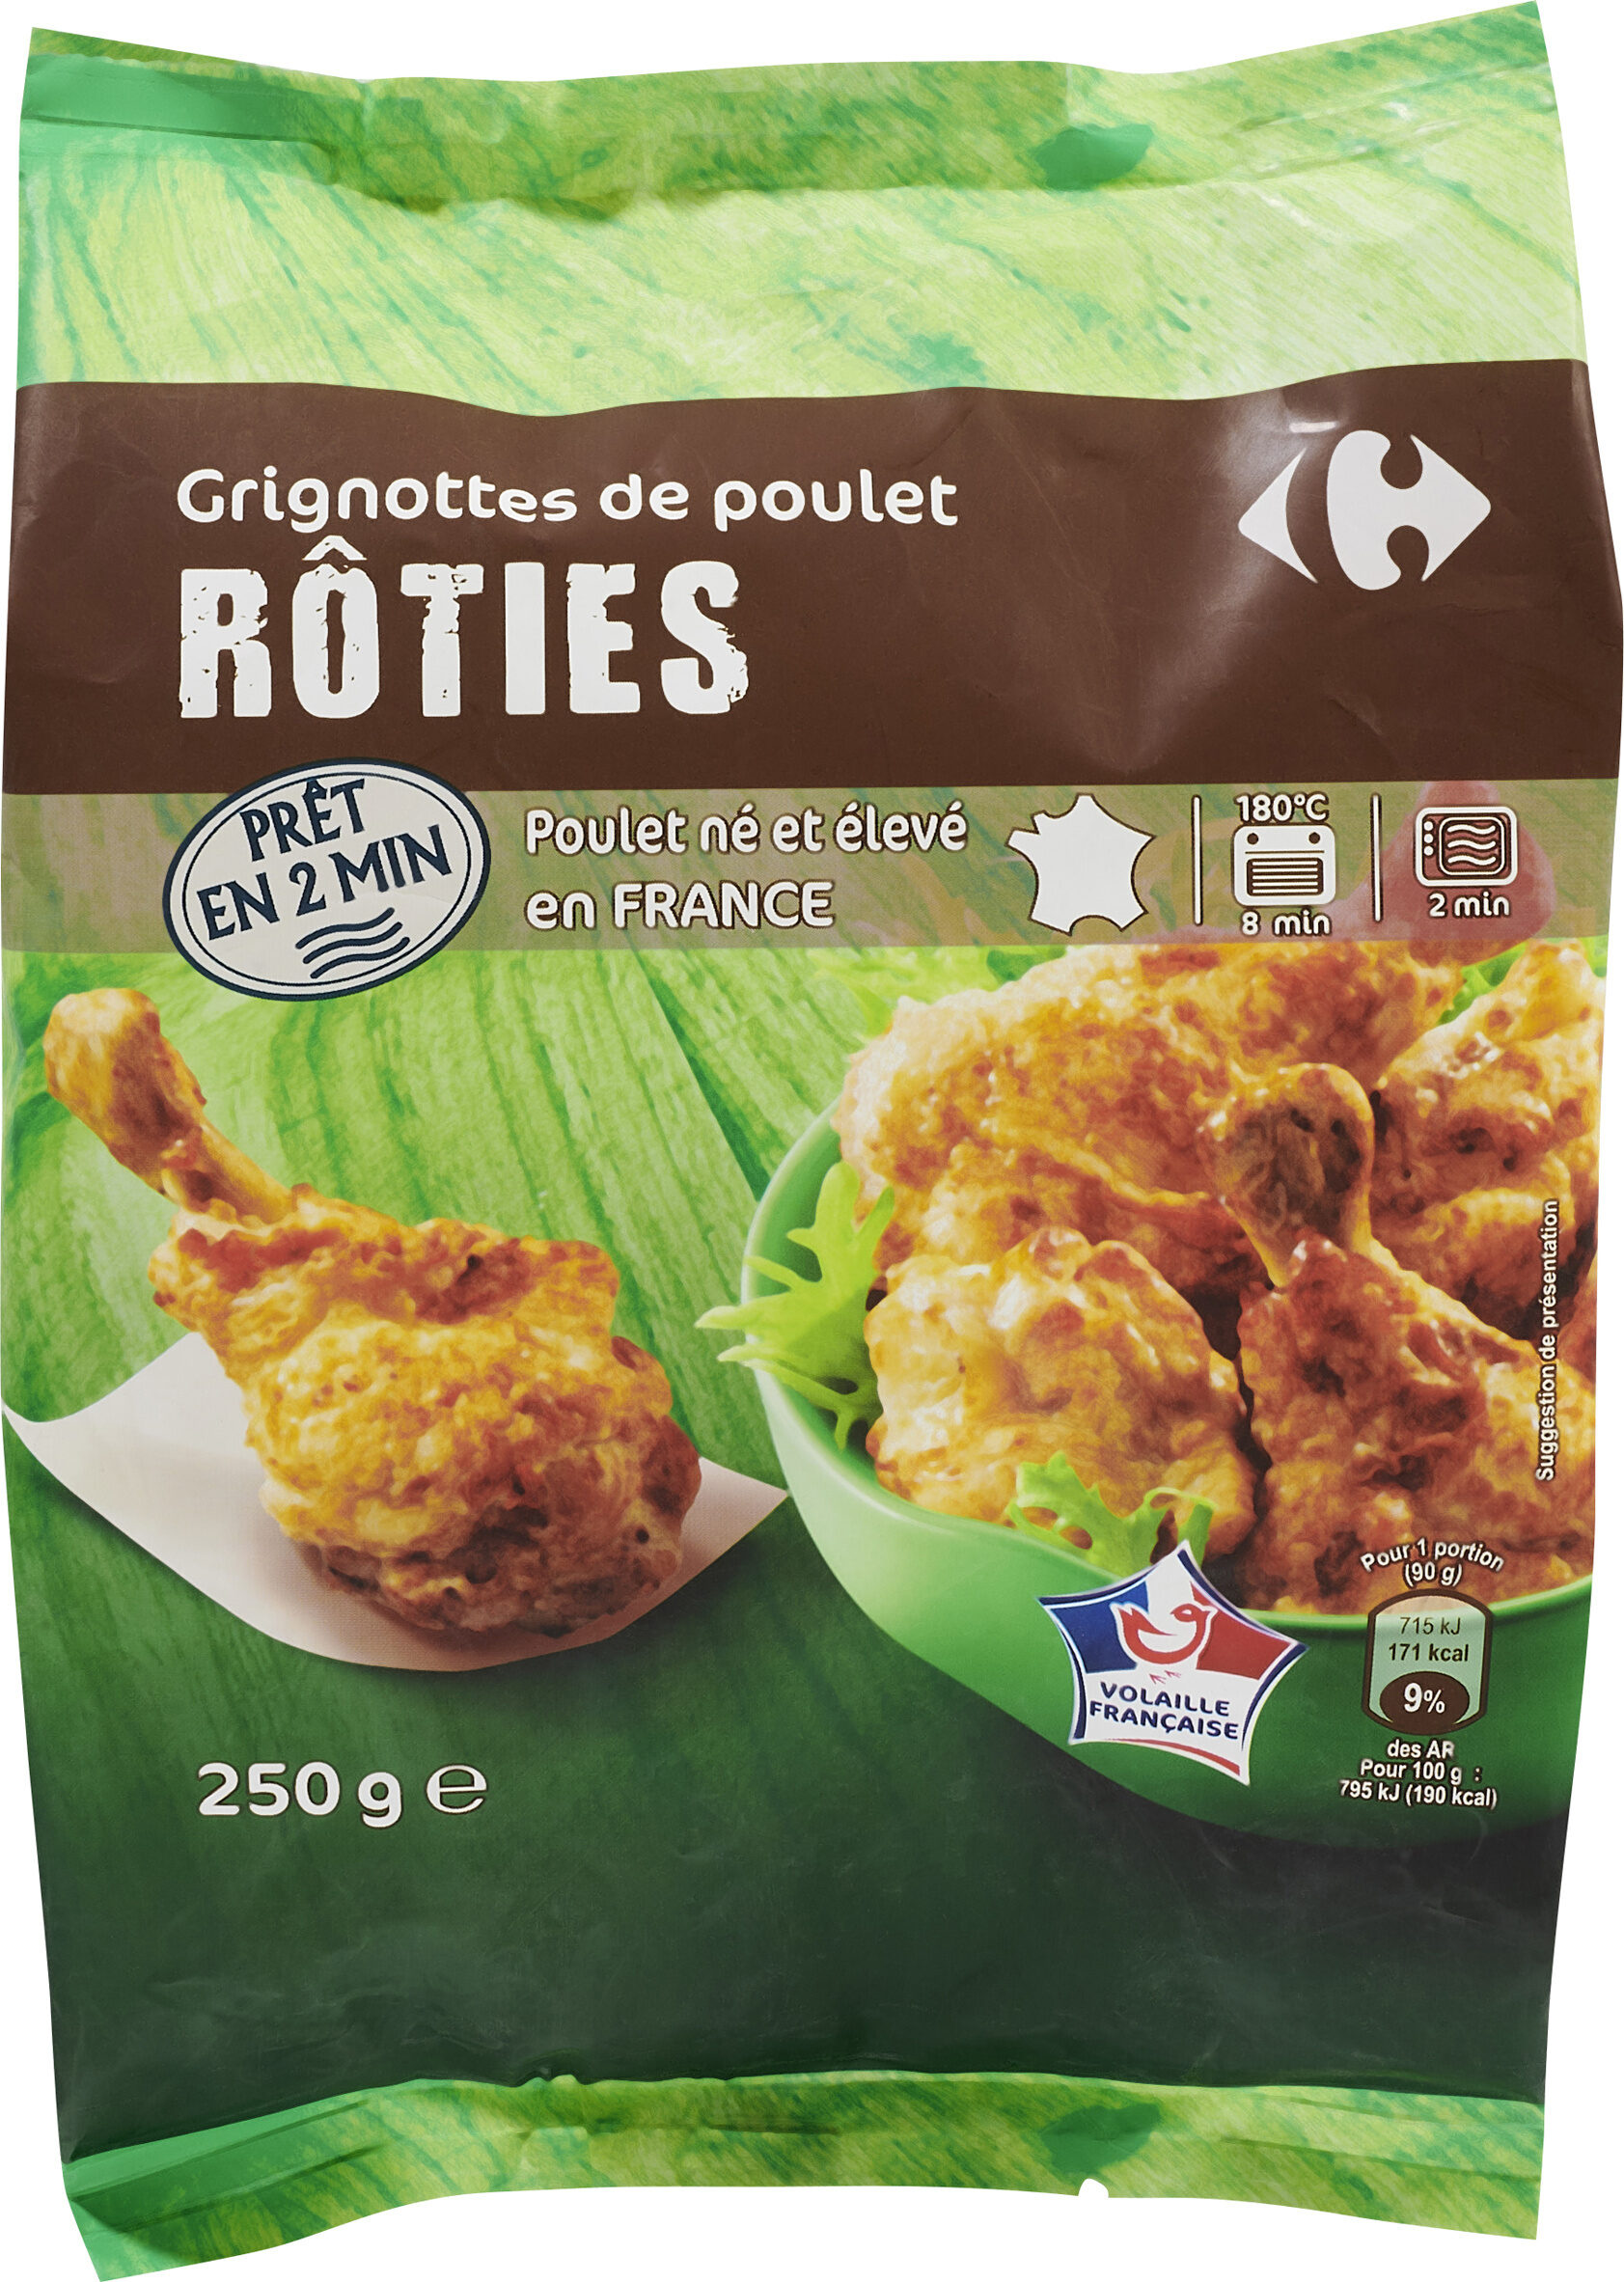 Grignottes de poulet rôties -Nature - Product - fr